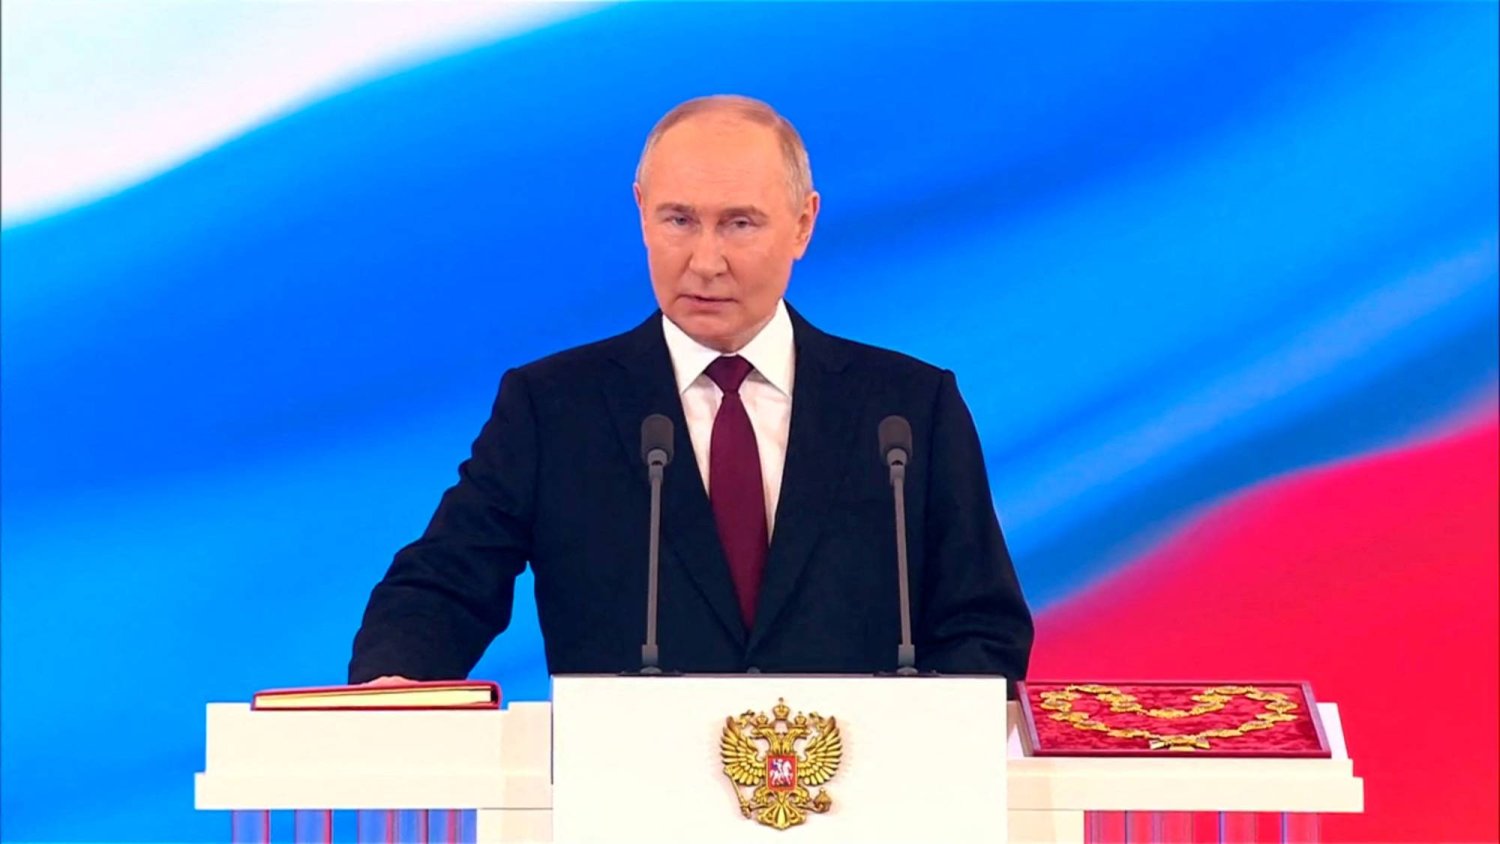 الرئيس الروسي فلاديمير بوتين يؤدي اليمين الدستورية لولاية رئاسية خامسة. 